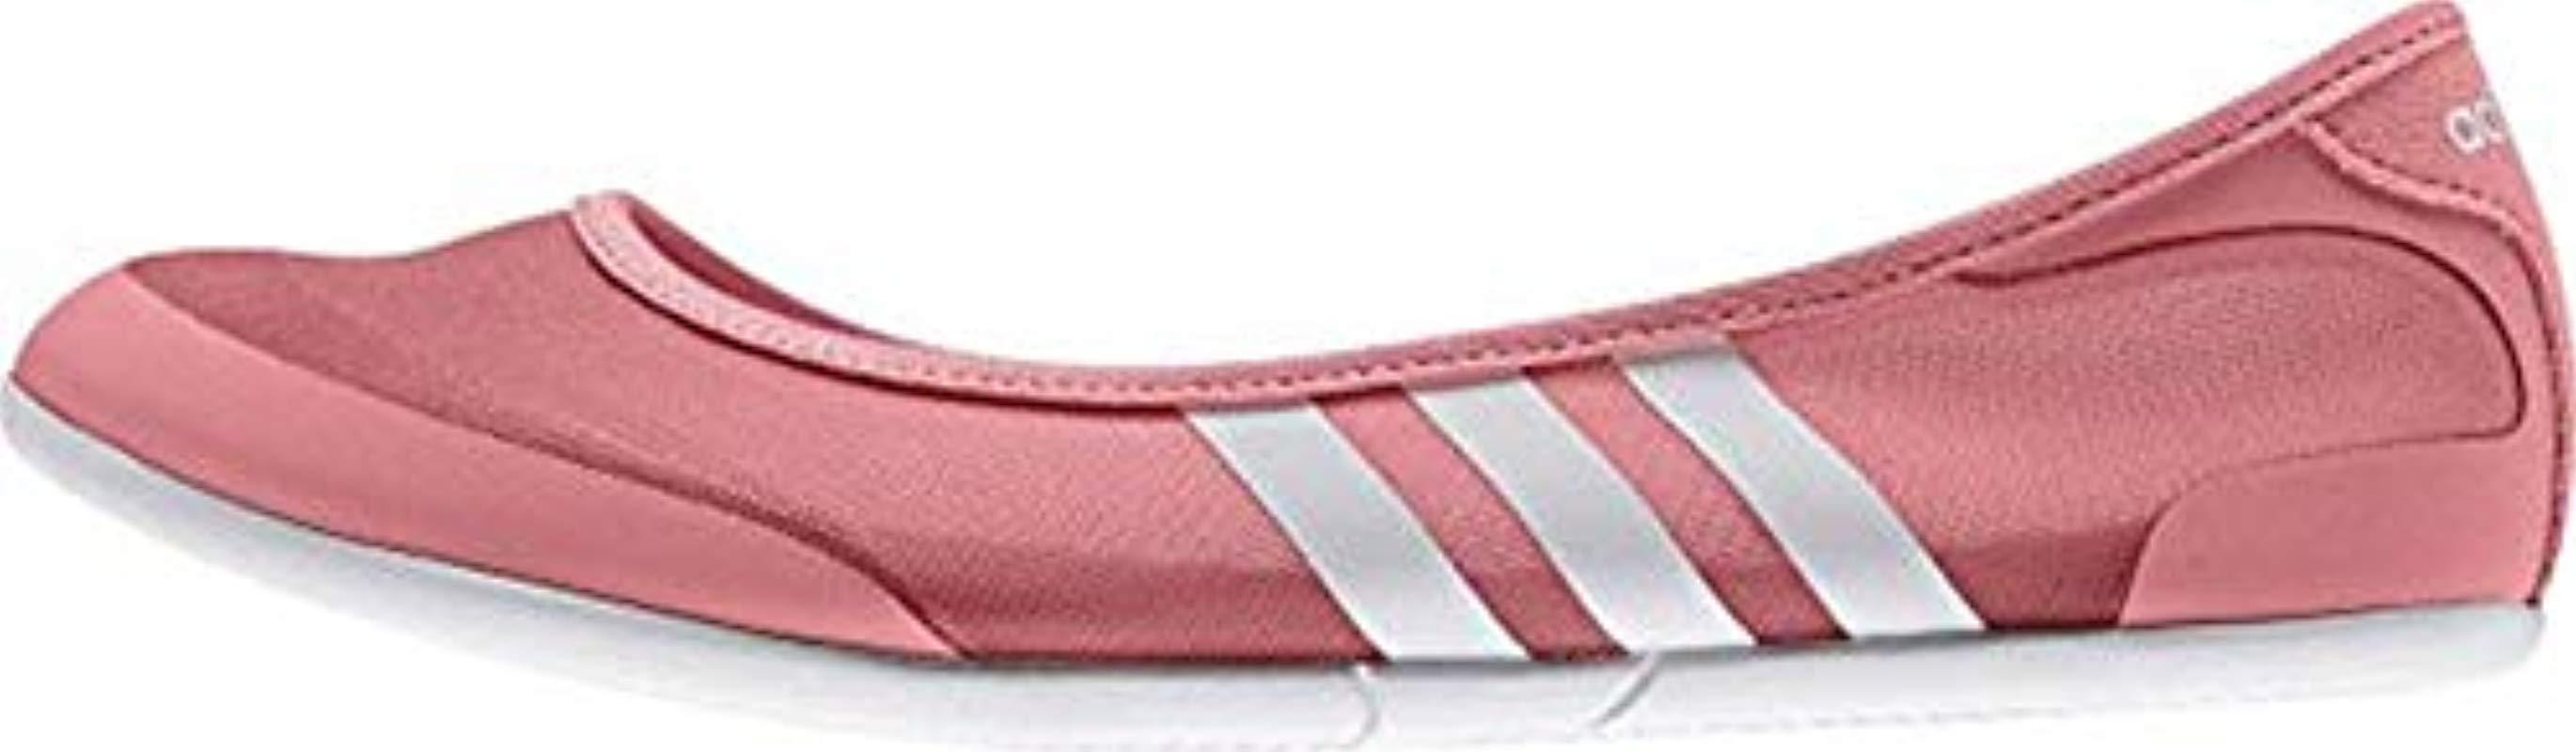 adidas Sunlina W Ballerina Schuhe Damen pink Gr. 40 2/3 UK7 | Lyst DE